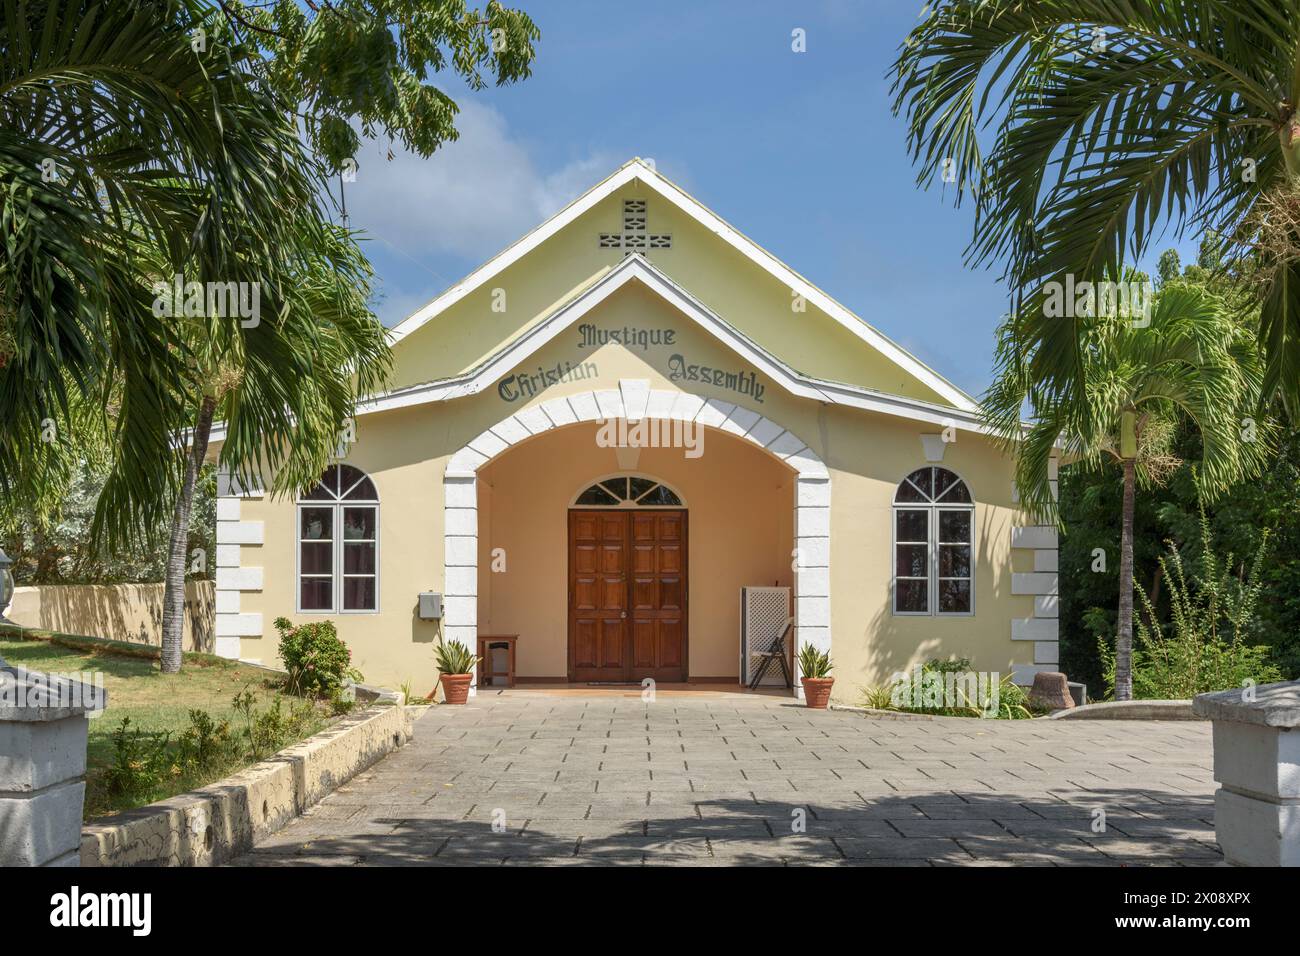 Chiesa dell'Assemblea Cristiana Mustique a Lovell Village, Mustique Island, St Vincent e Grenadine, Caraibi Foto Stock